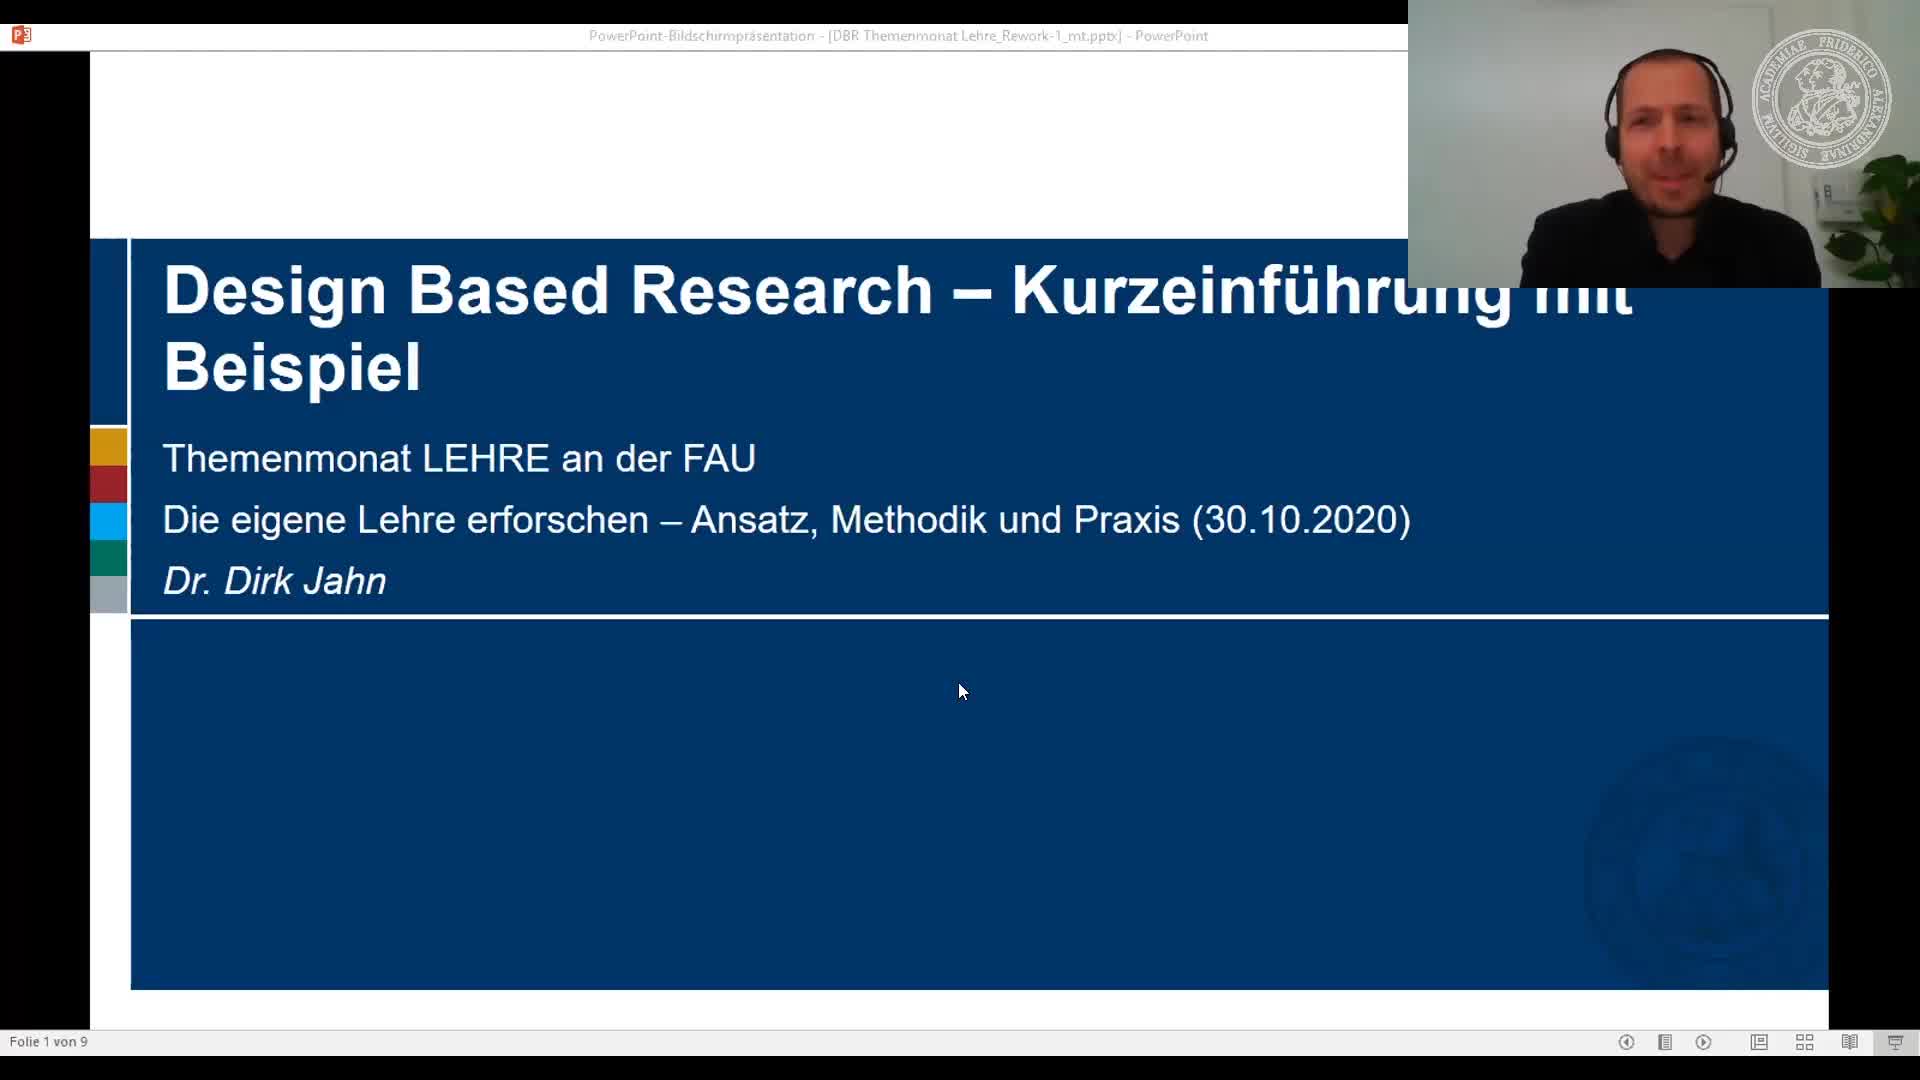 Dr. Dirk Jahn: Design Based Research - Kurzeinführung mit Beispiel preview image